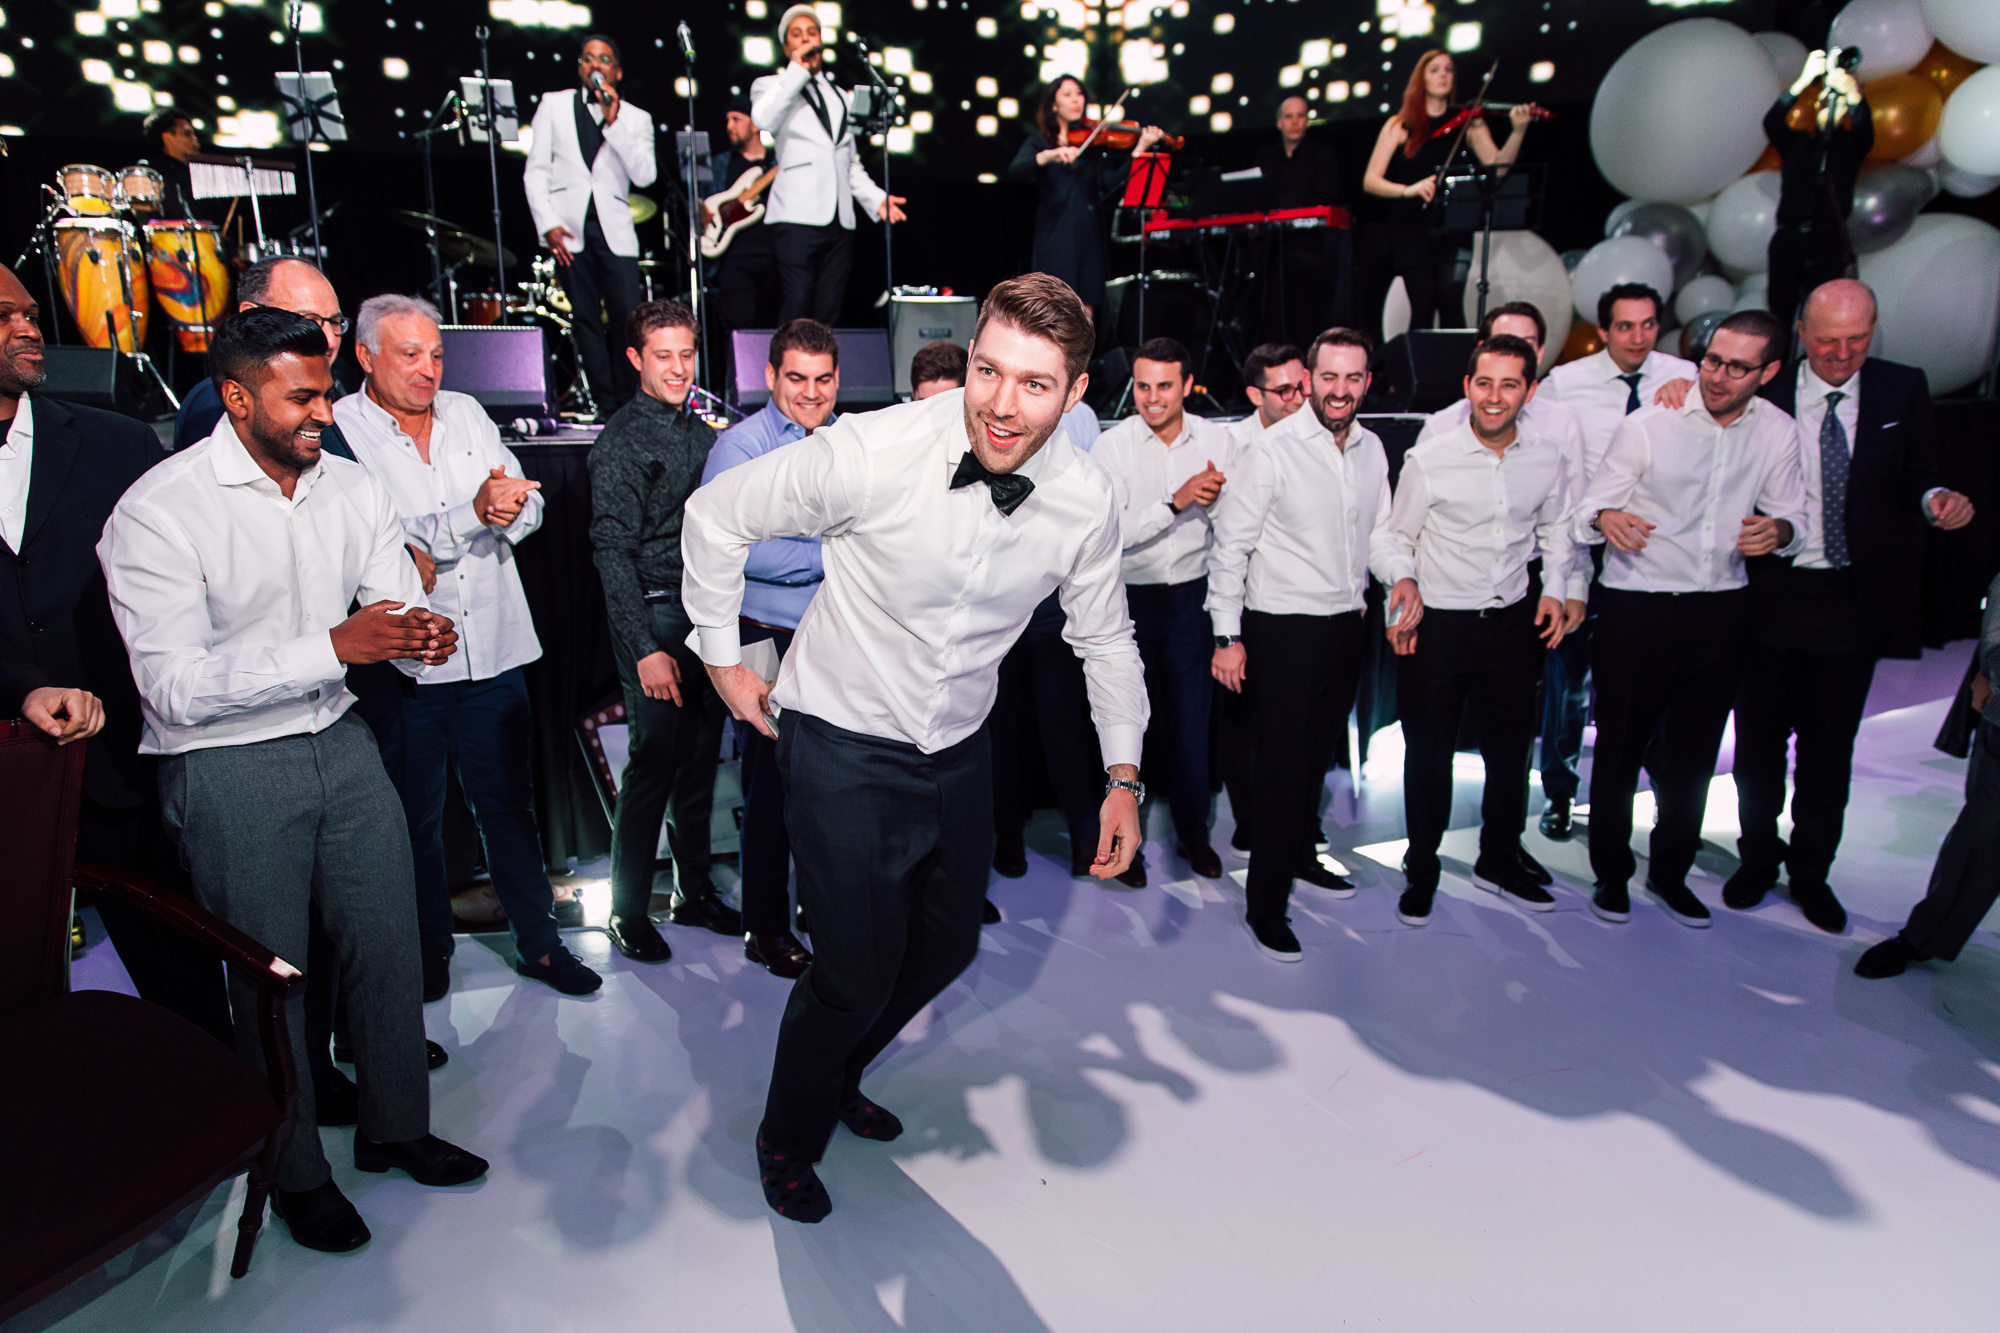 dancing groom reception